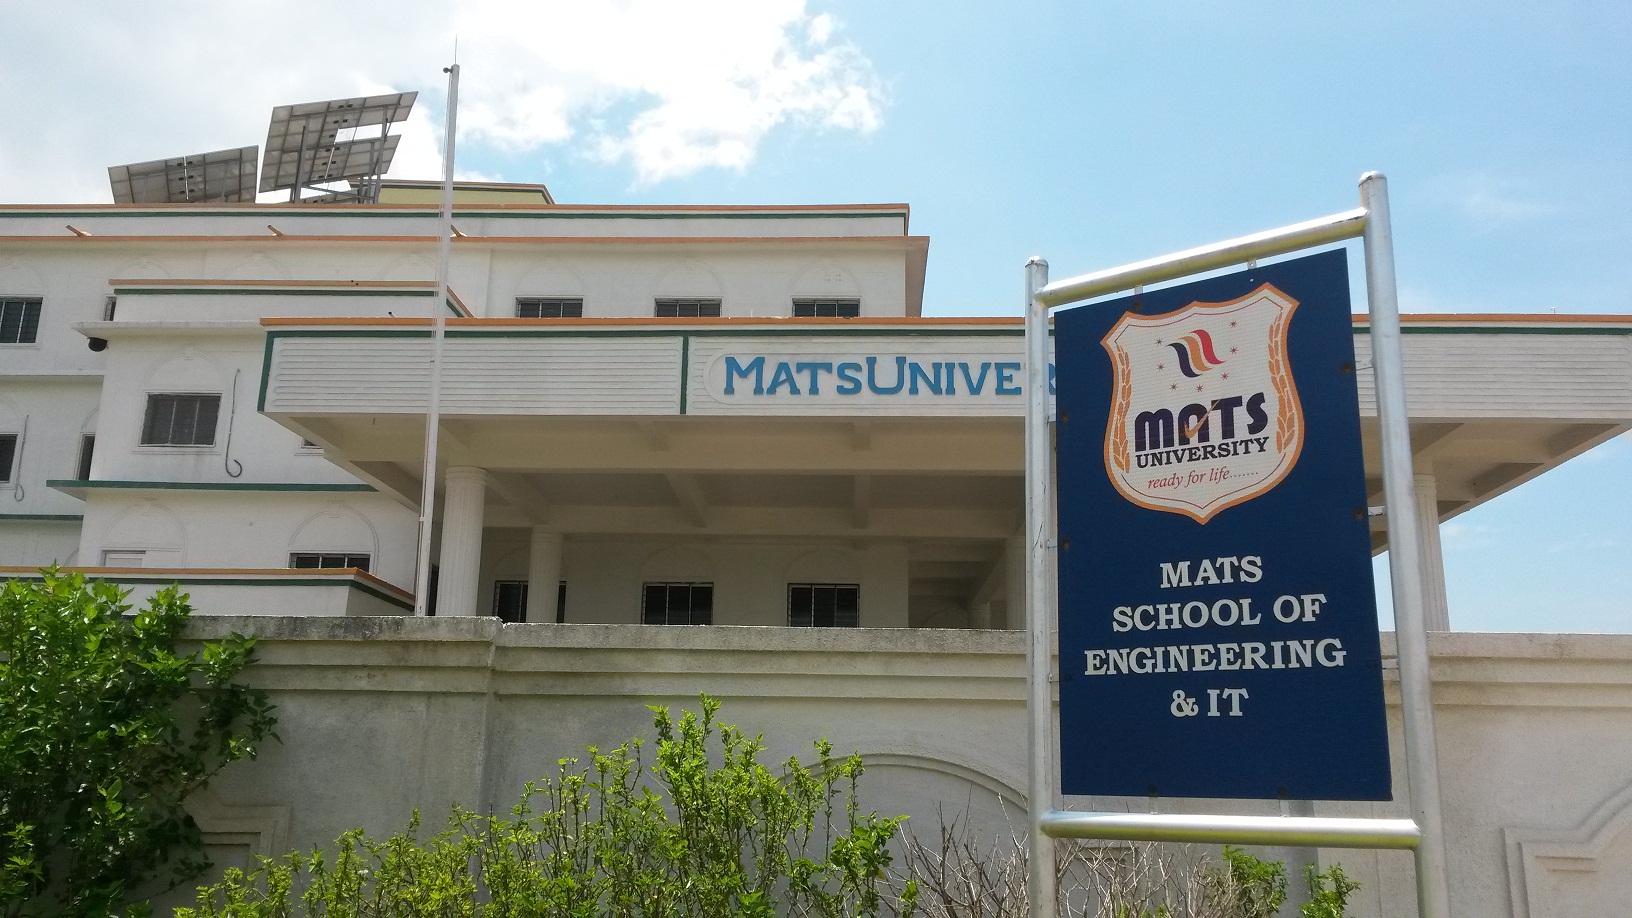 MATS University Image